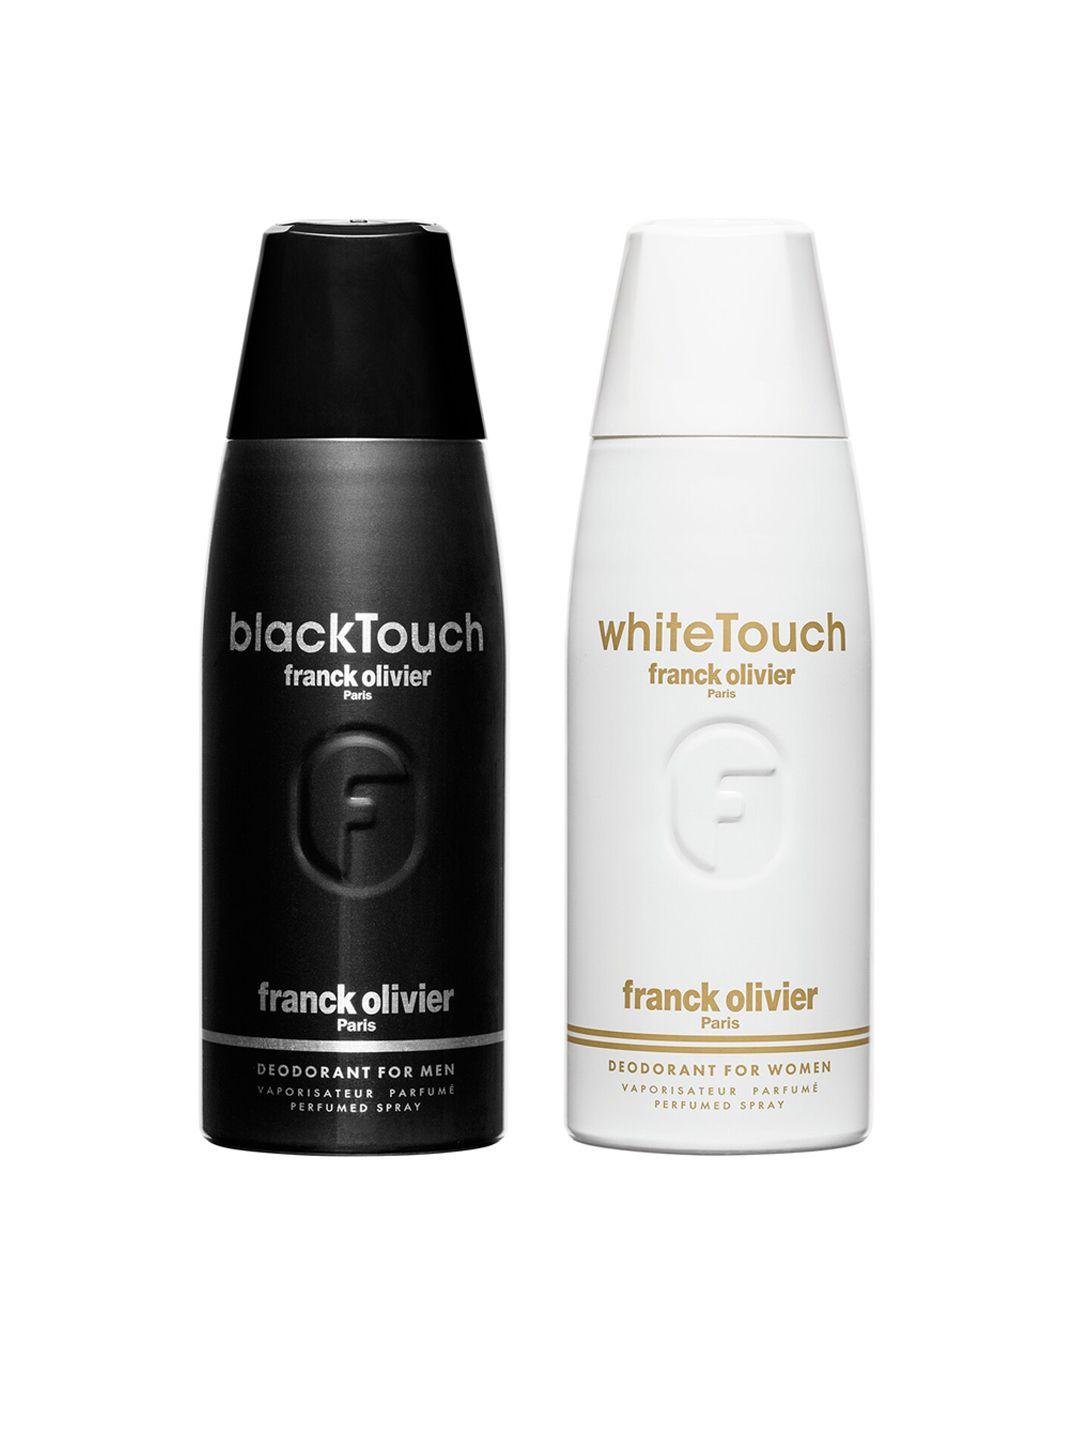 franck olivier set of 2 deodorants - blacktouch for men & whitetouch for women 250ml each